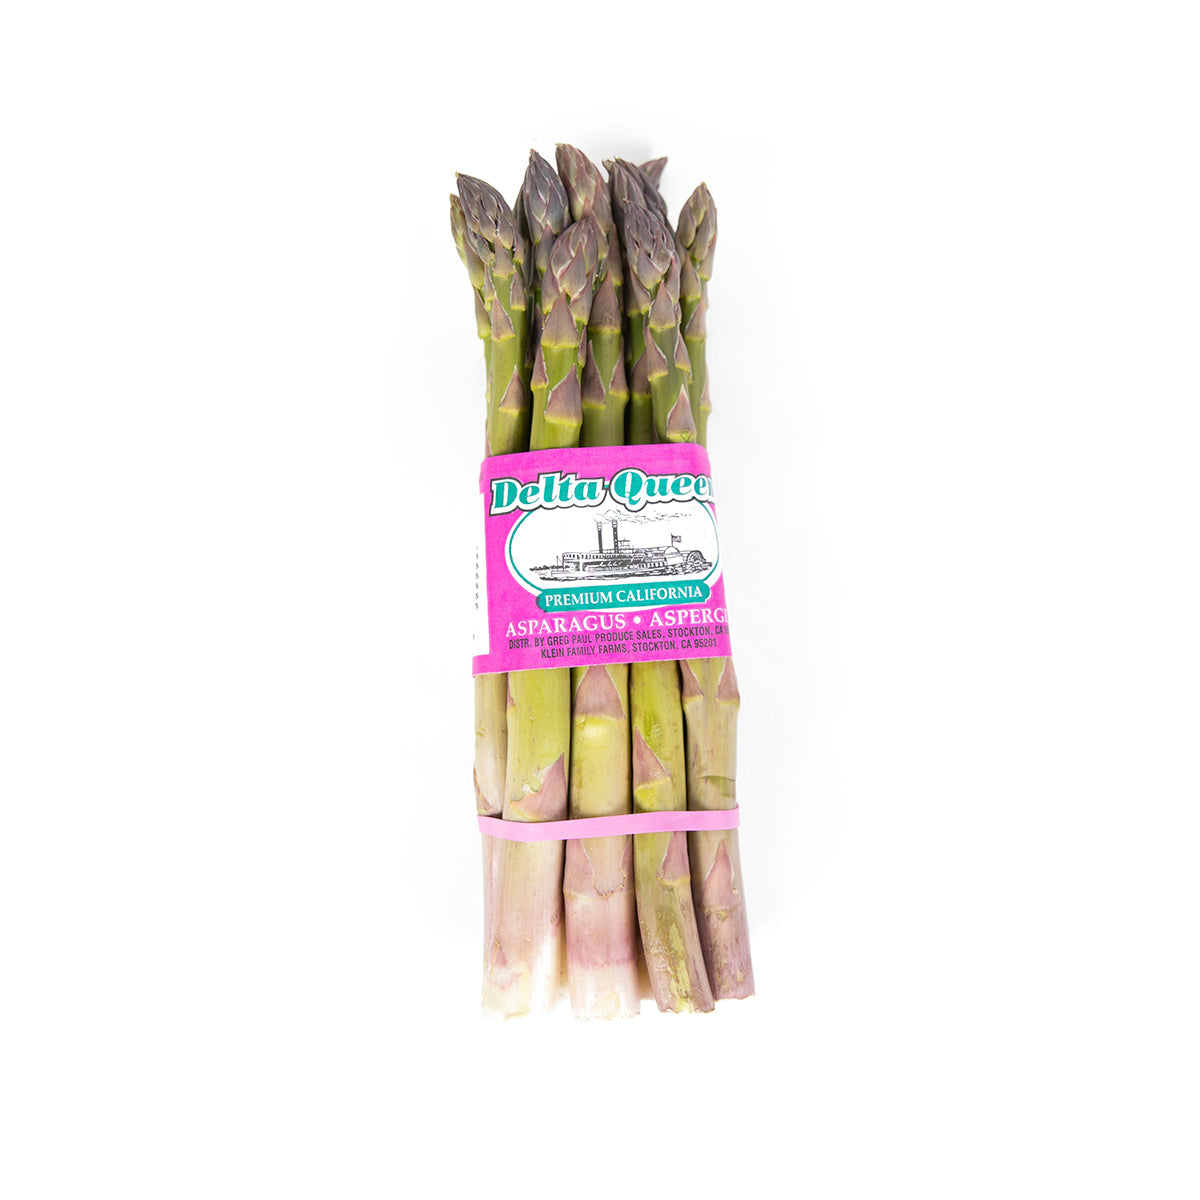 Delta Queen California Premium Jumbo Asparagus 11 lb